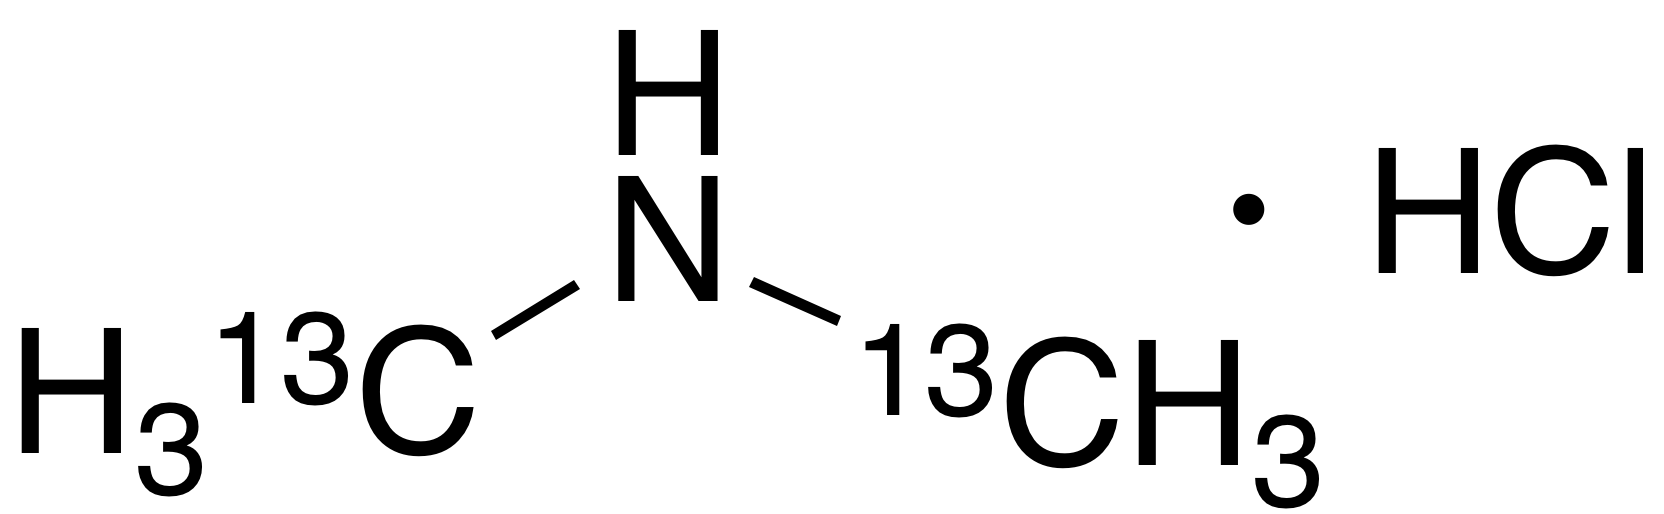 Dimethylamine Hydrochloride-13C2